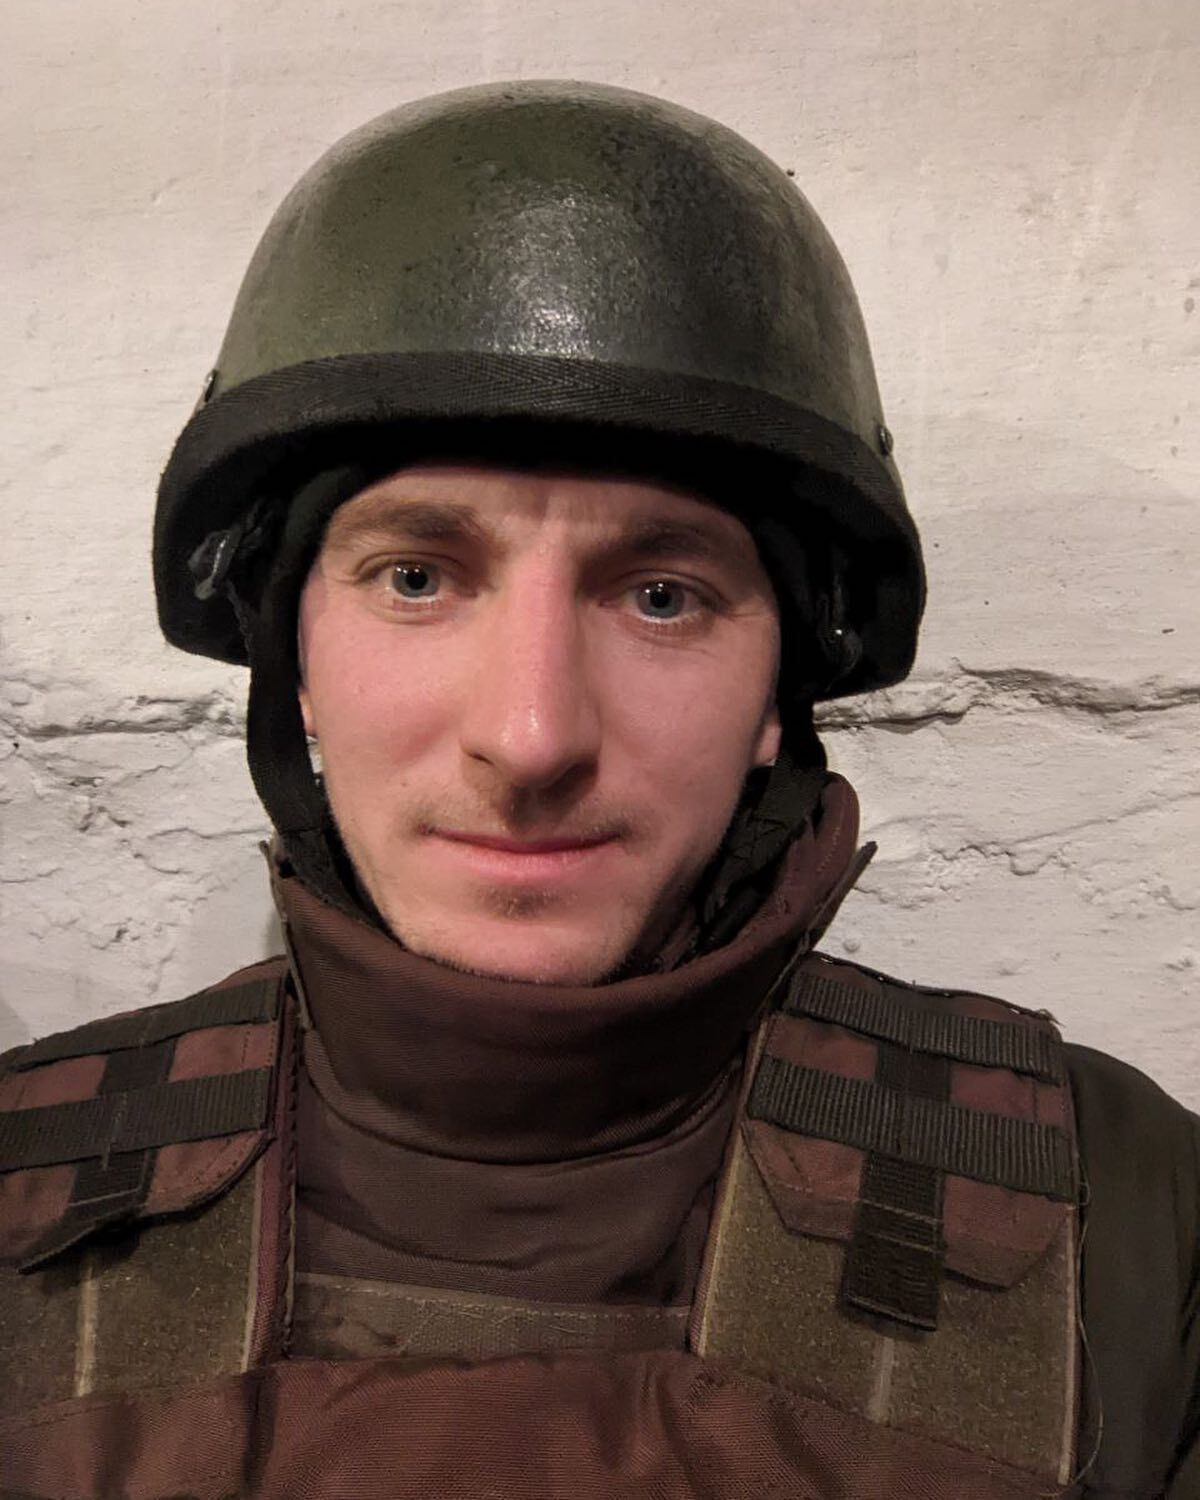 Дмитрий Пидручный служит в Нацгвардии